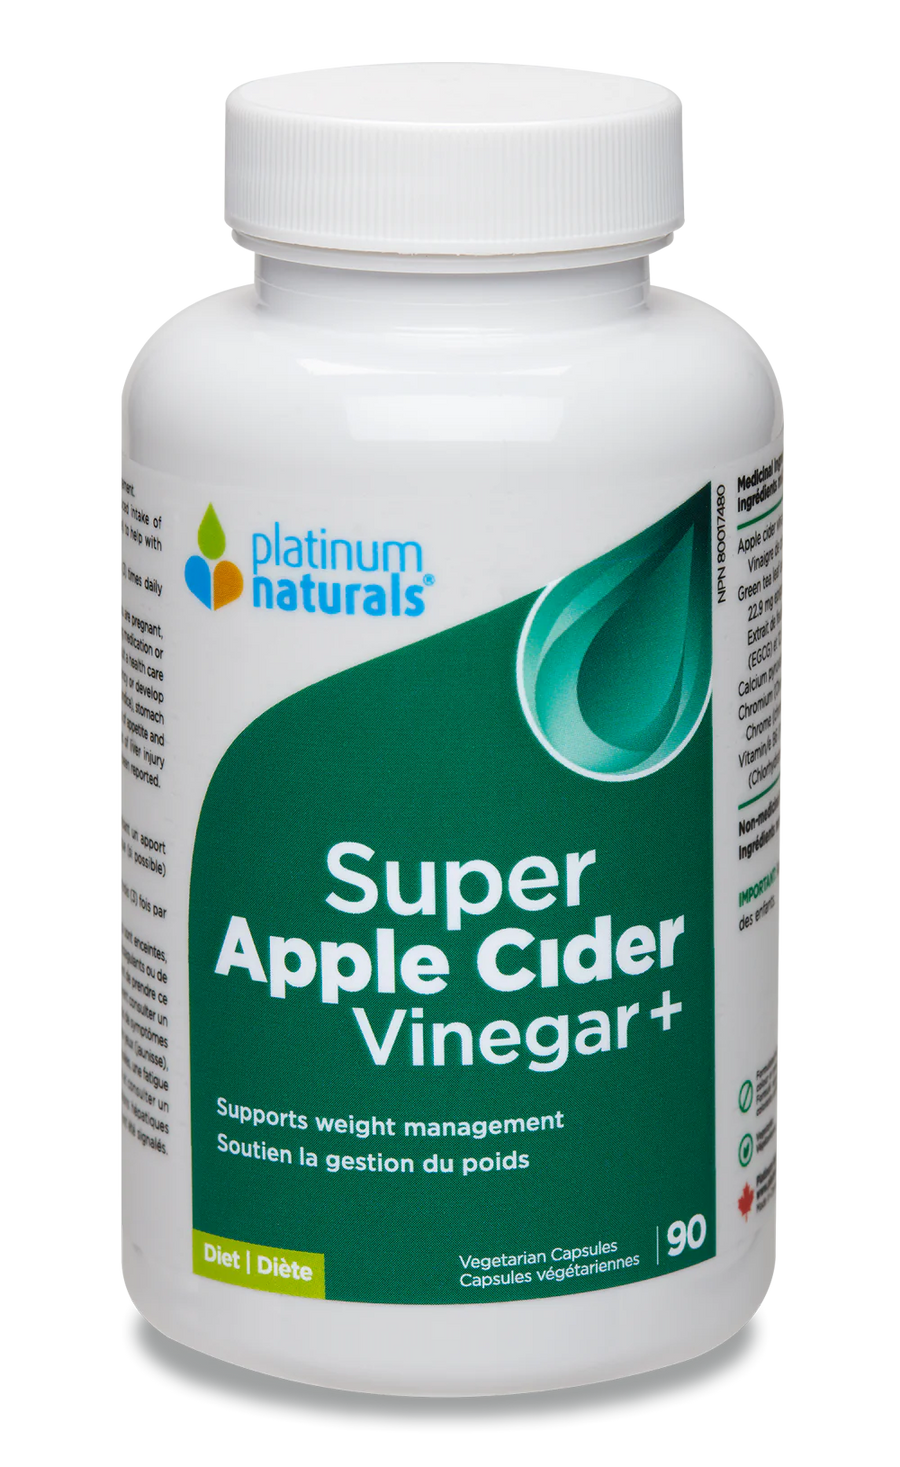 Platinum Naturals Super Apple Cider Vinegar+ 90 Veg. Capsules